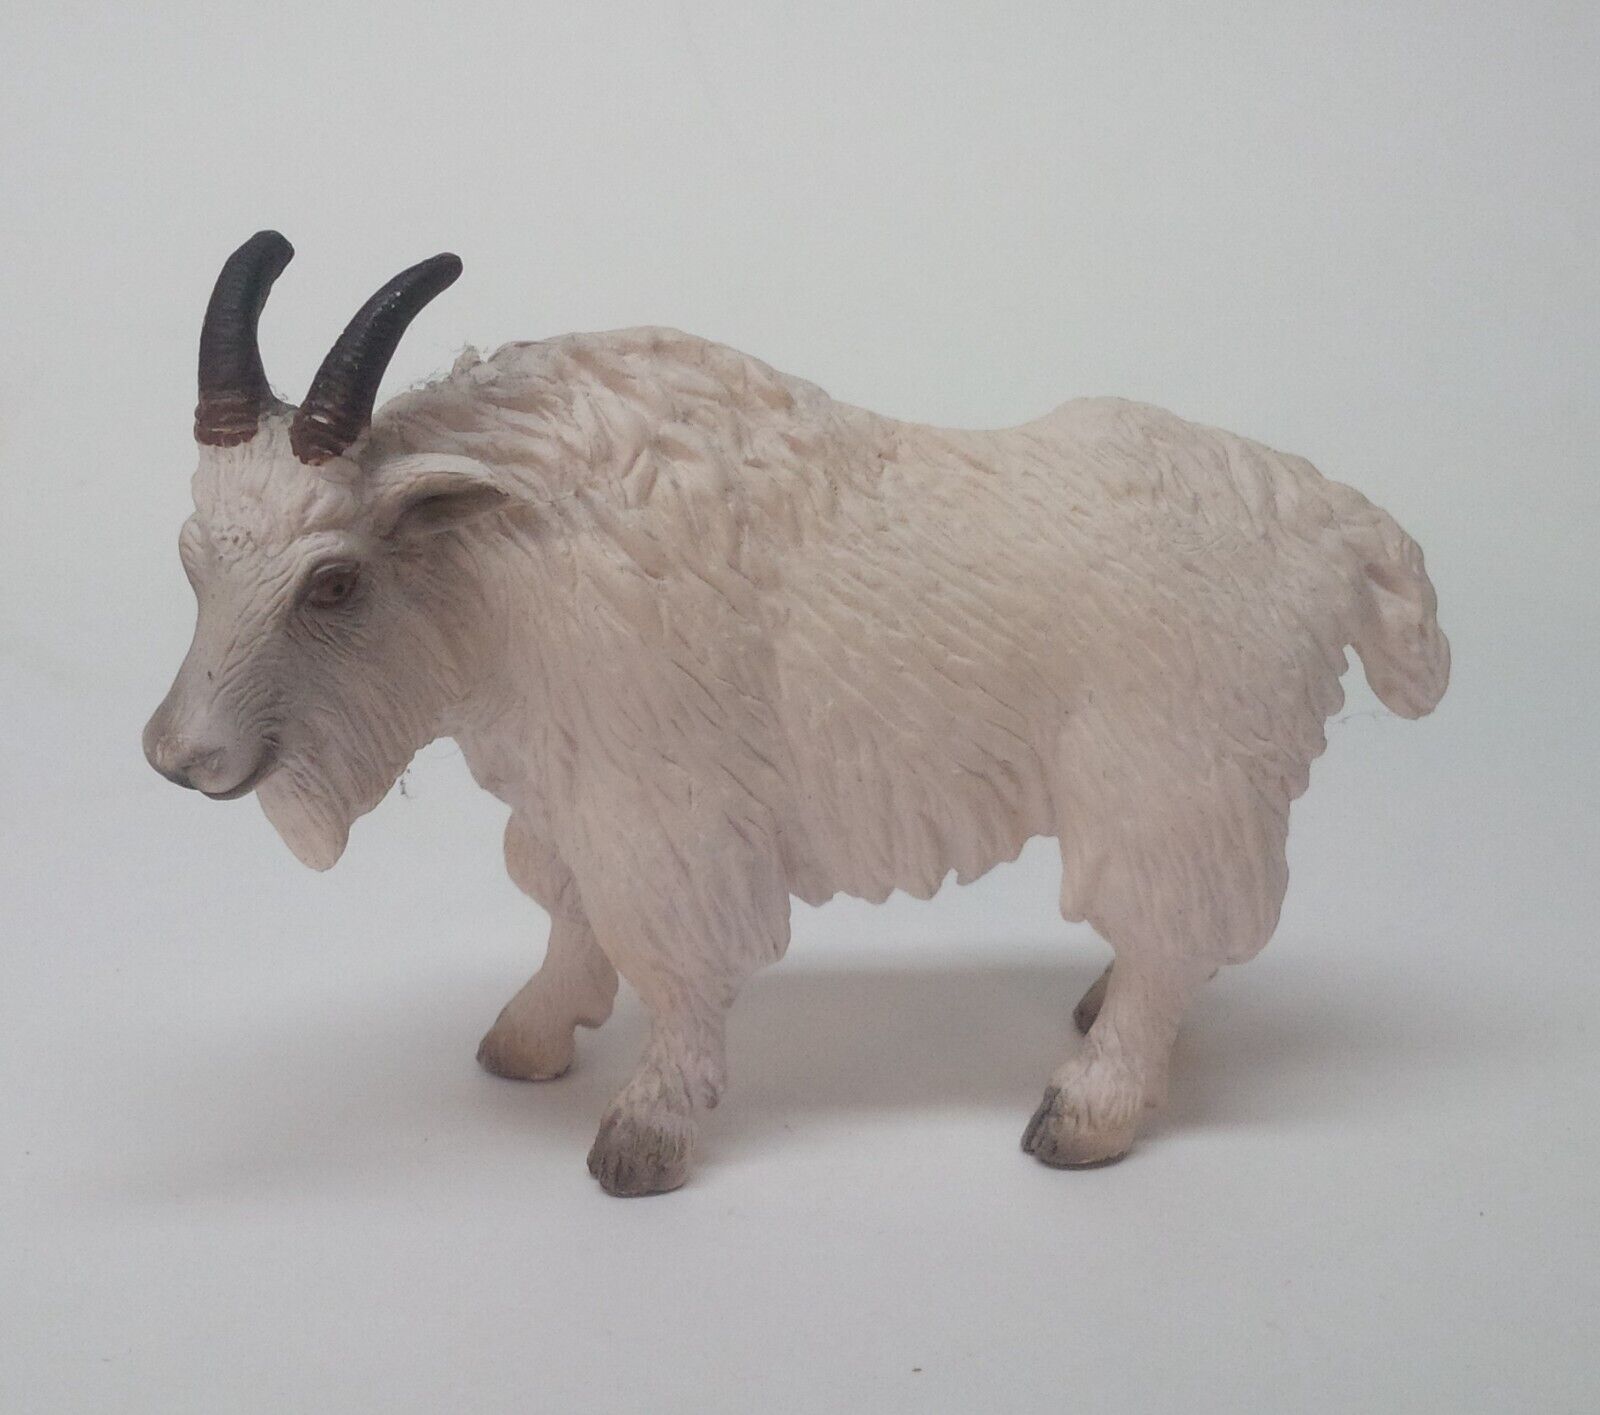 SCHLEICH White Mountain Goat Animal Figure 2004